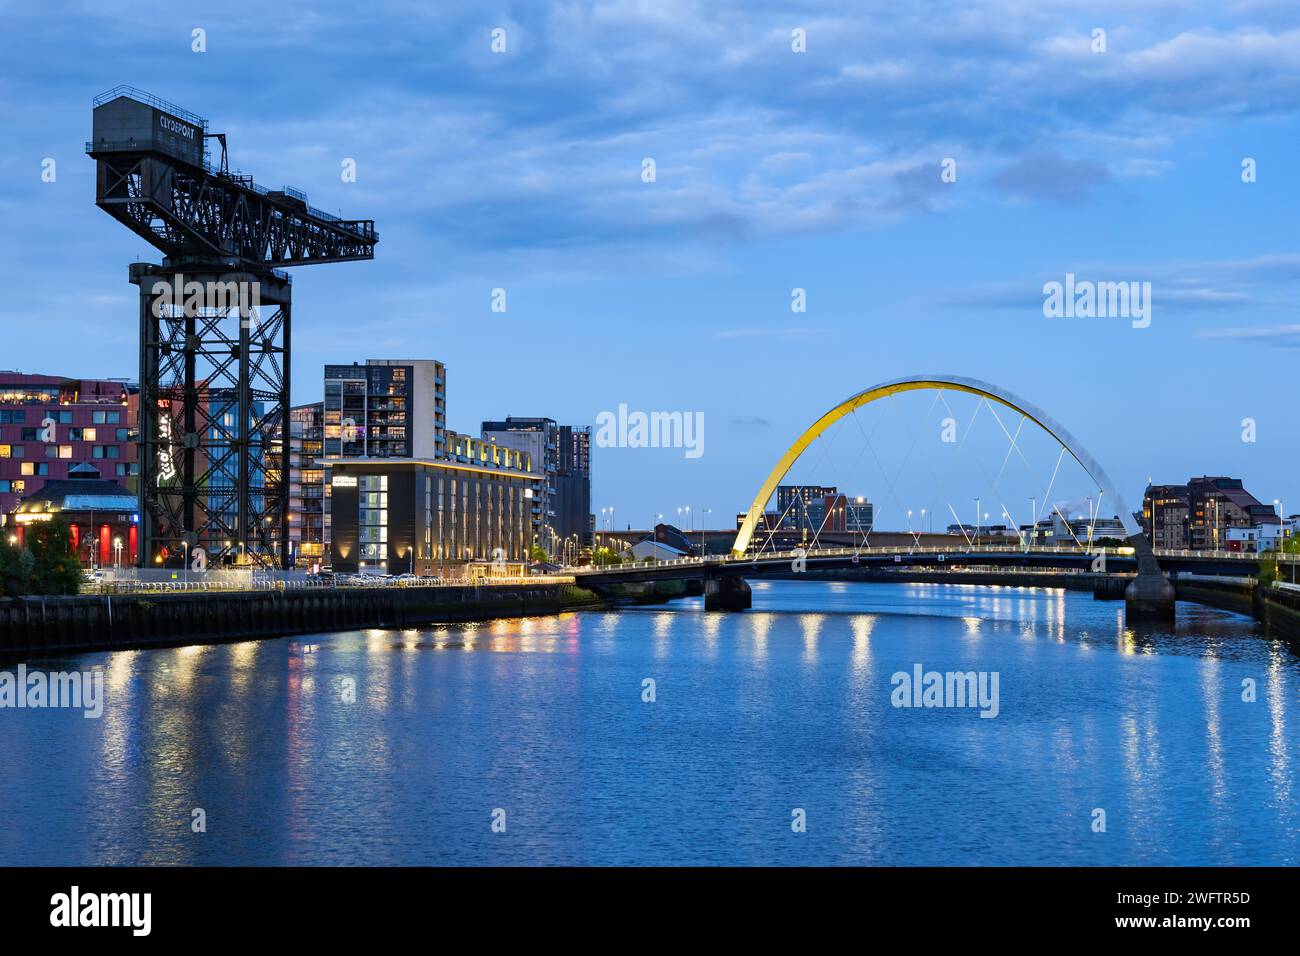 Finnieston Crane e Clyde Arc bridge sul fiume Clyde al crepuscolo nella città di Glasgow in Scozia, Regno Unito. Foto Stock